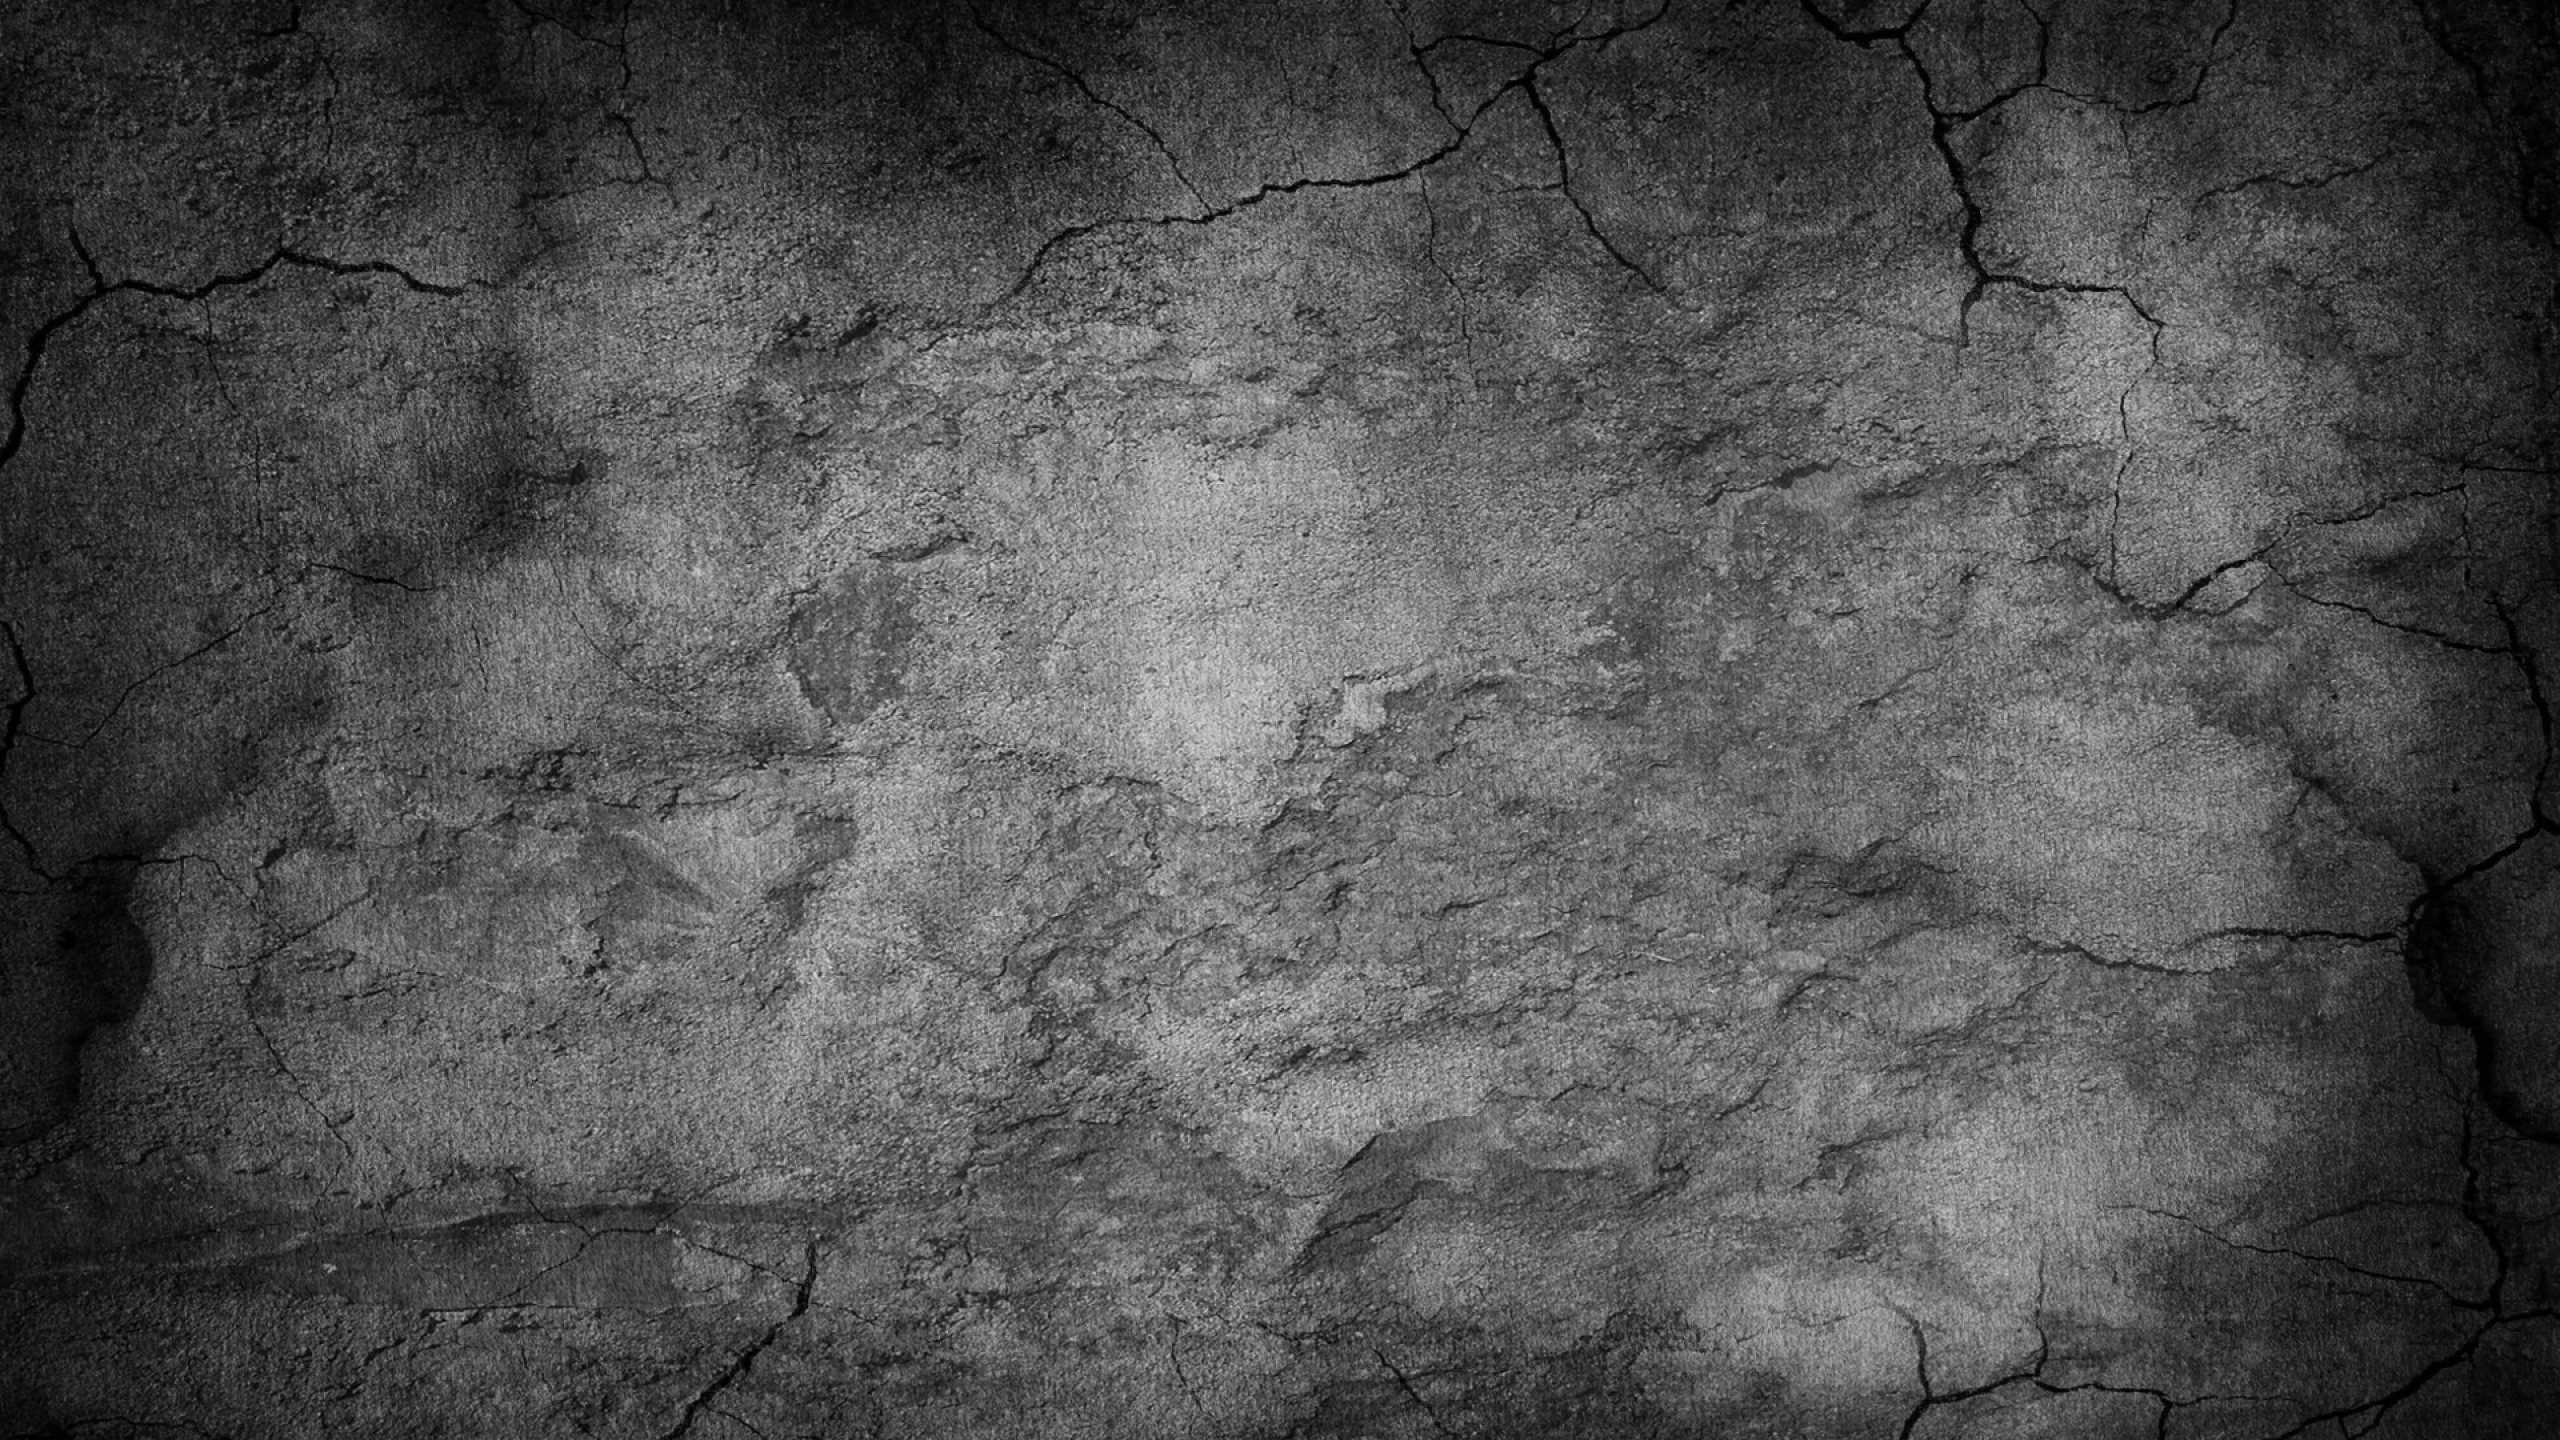 papel pintado de piedra negra,negro,pared,en blanco y negro,fotografía monocroma,texto